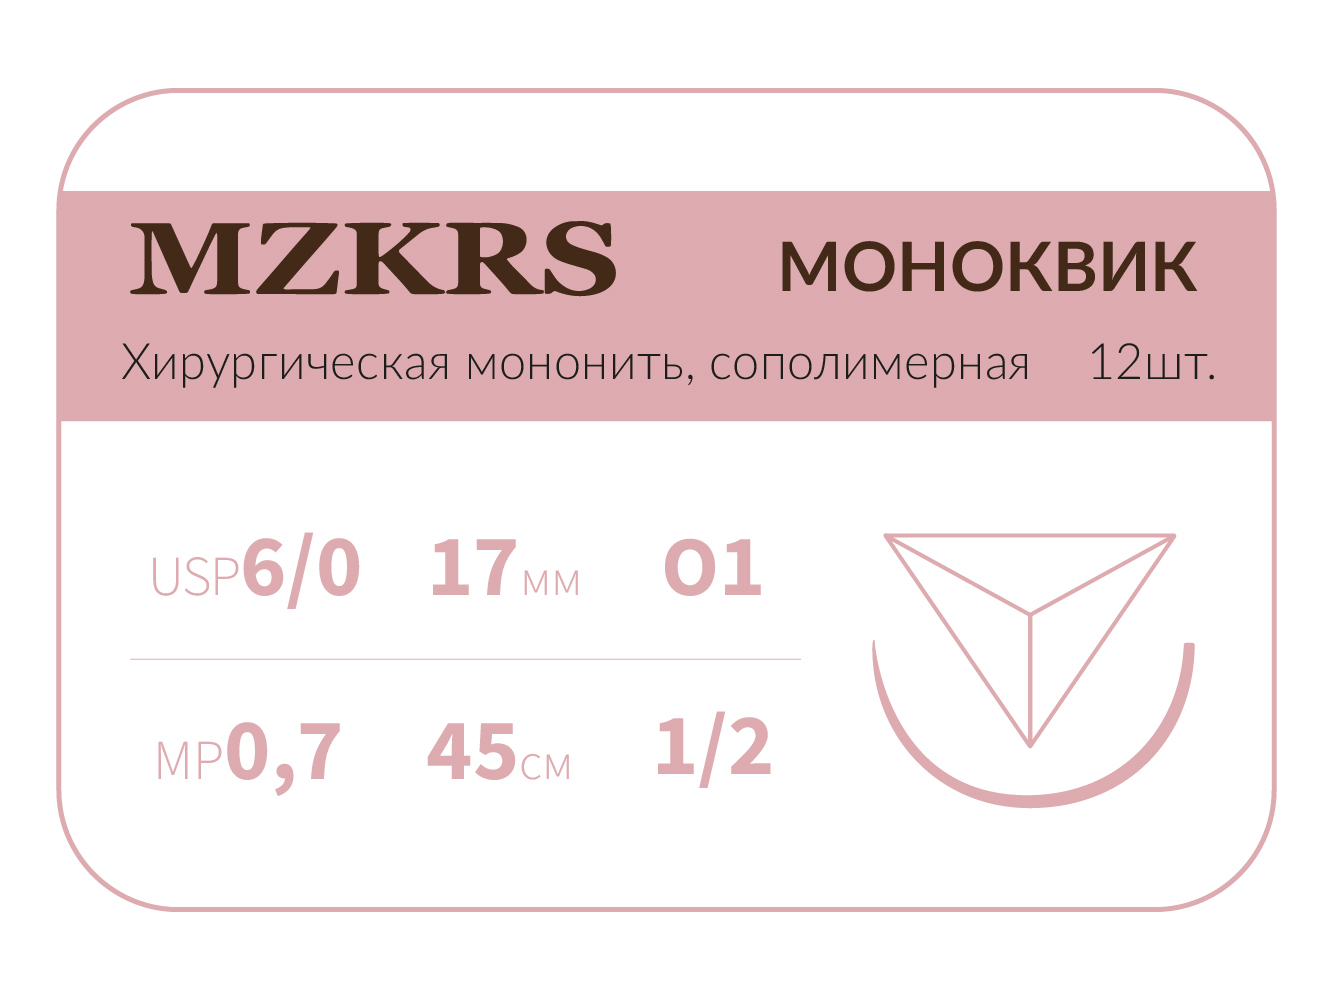 1712О1 Premium-6/0 (0,7)45 МОНК МОНОКВИК хирургическая мононить, сополимерная, обратно-режущая игла, MZKRS (Россия)